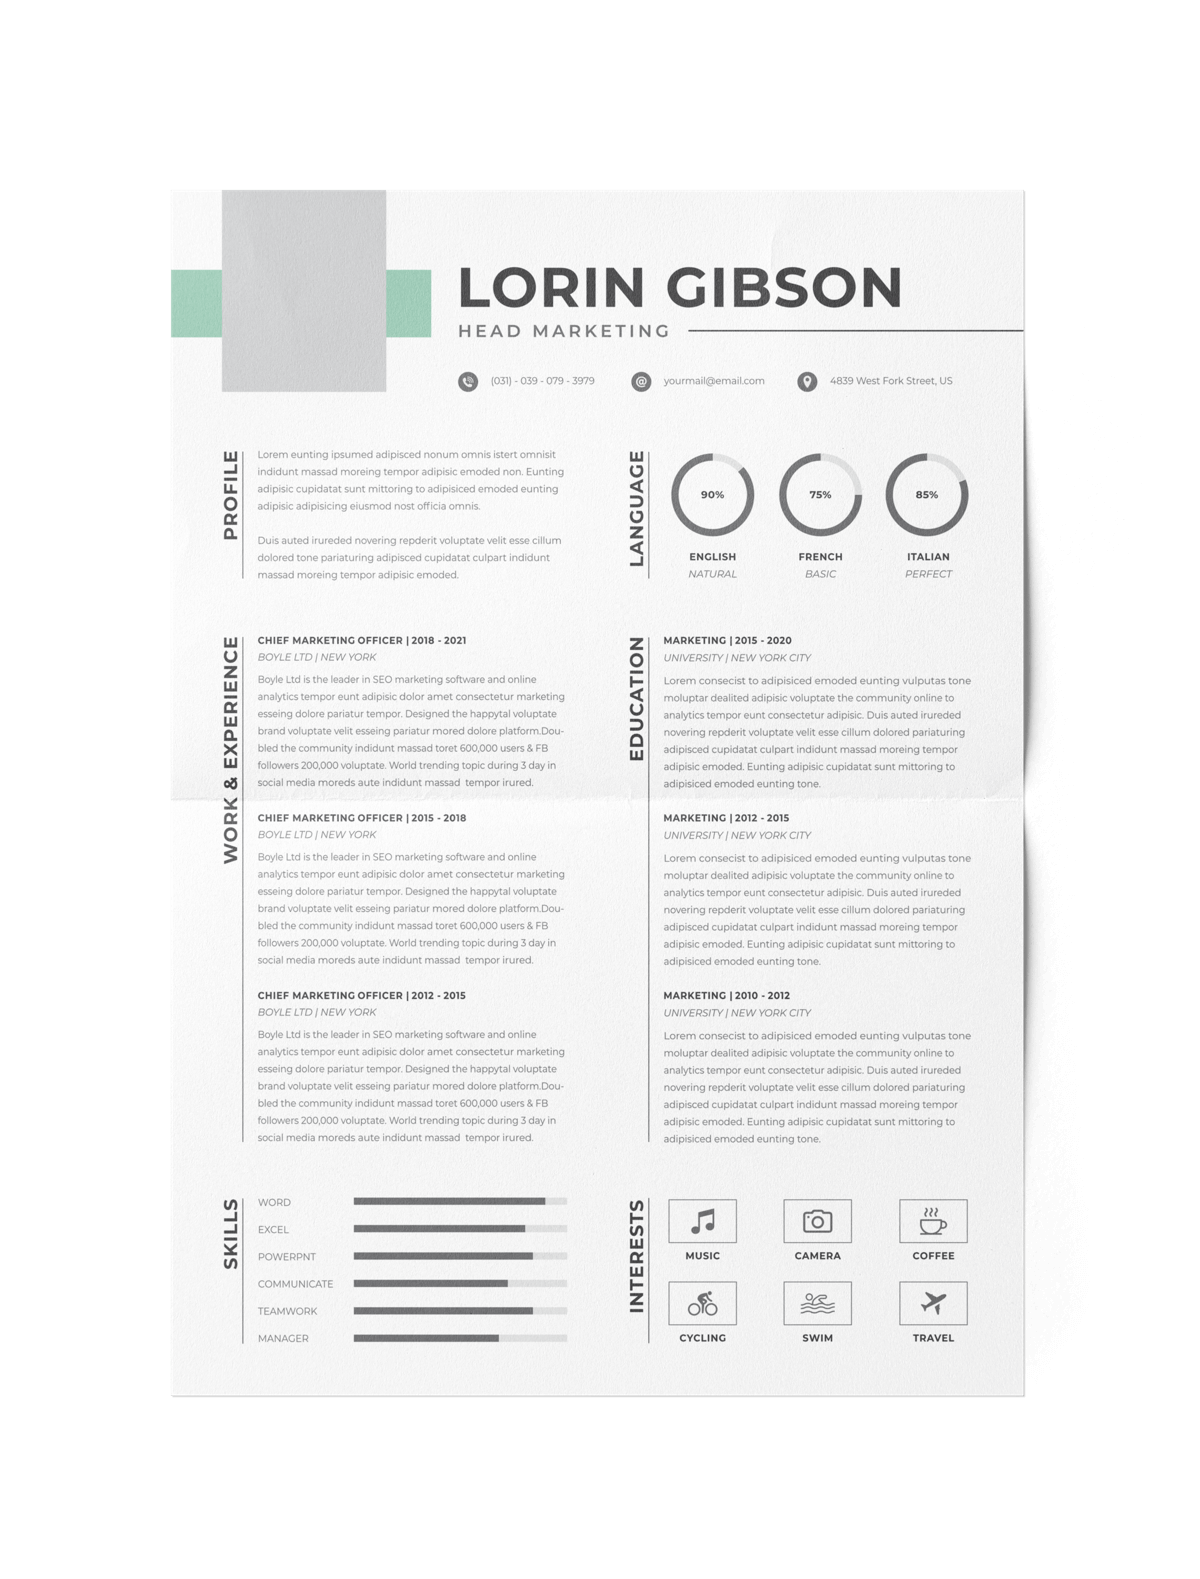 CV #127 Lorin Gibson